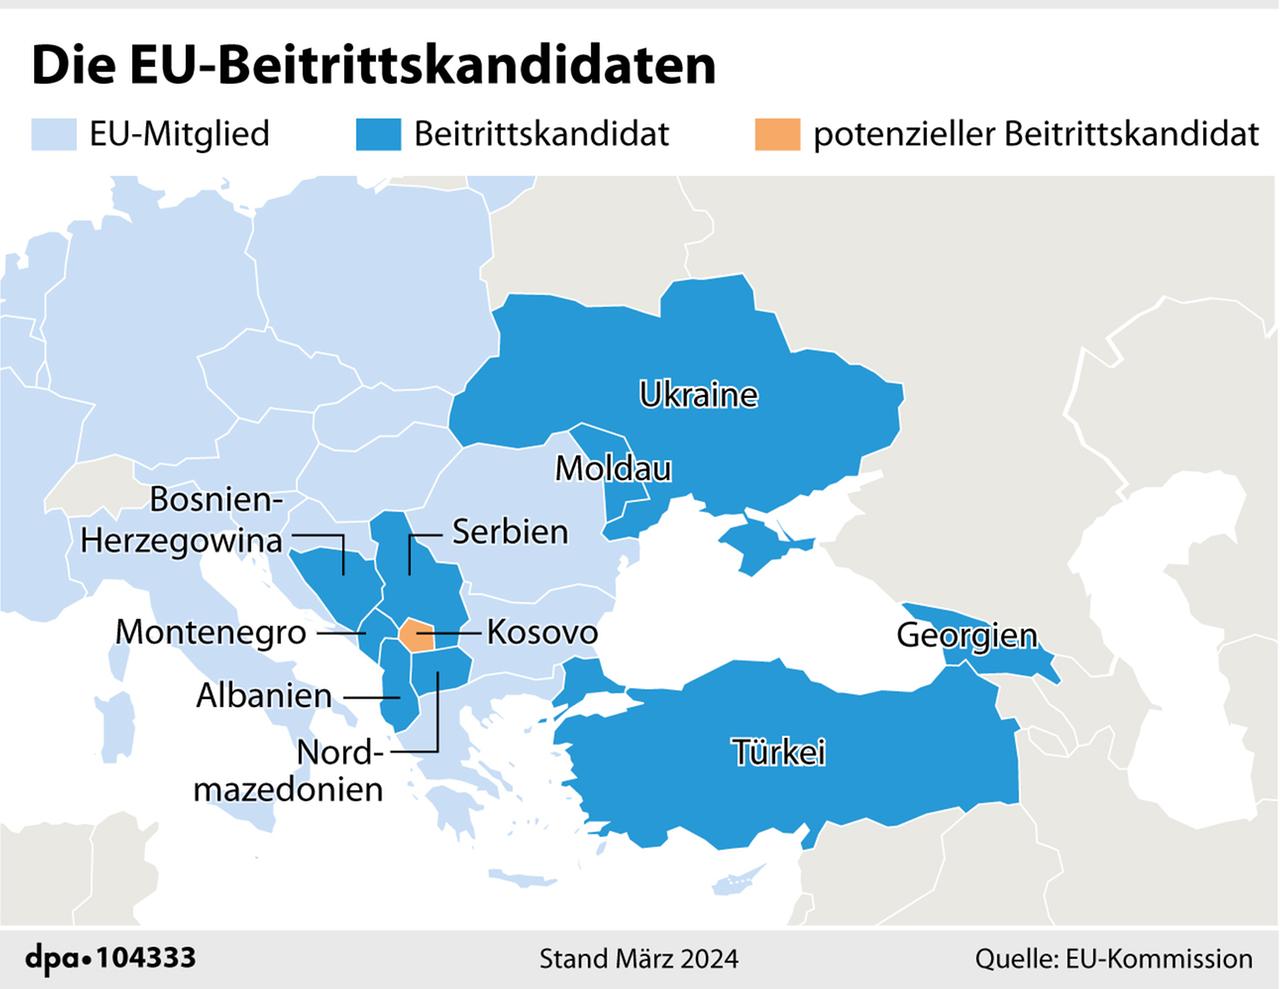 Die Grafik zeigt eine Karte der EU-Mitgliedsstaaten und Beitrittskandidaten